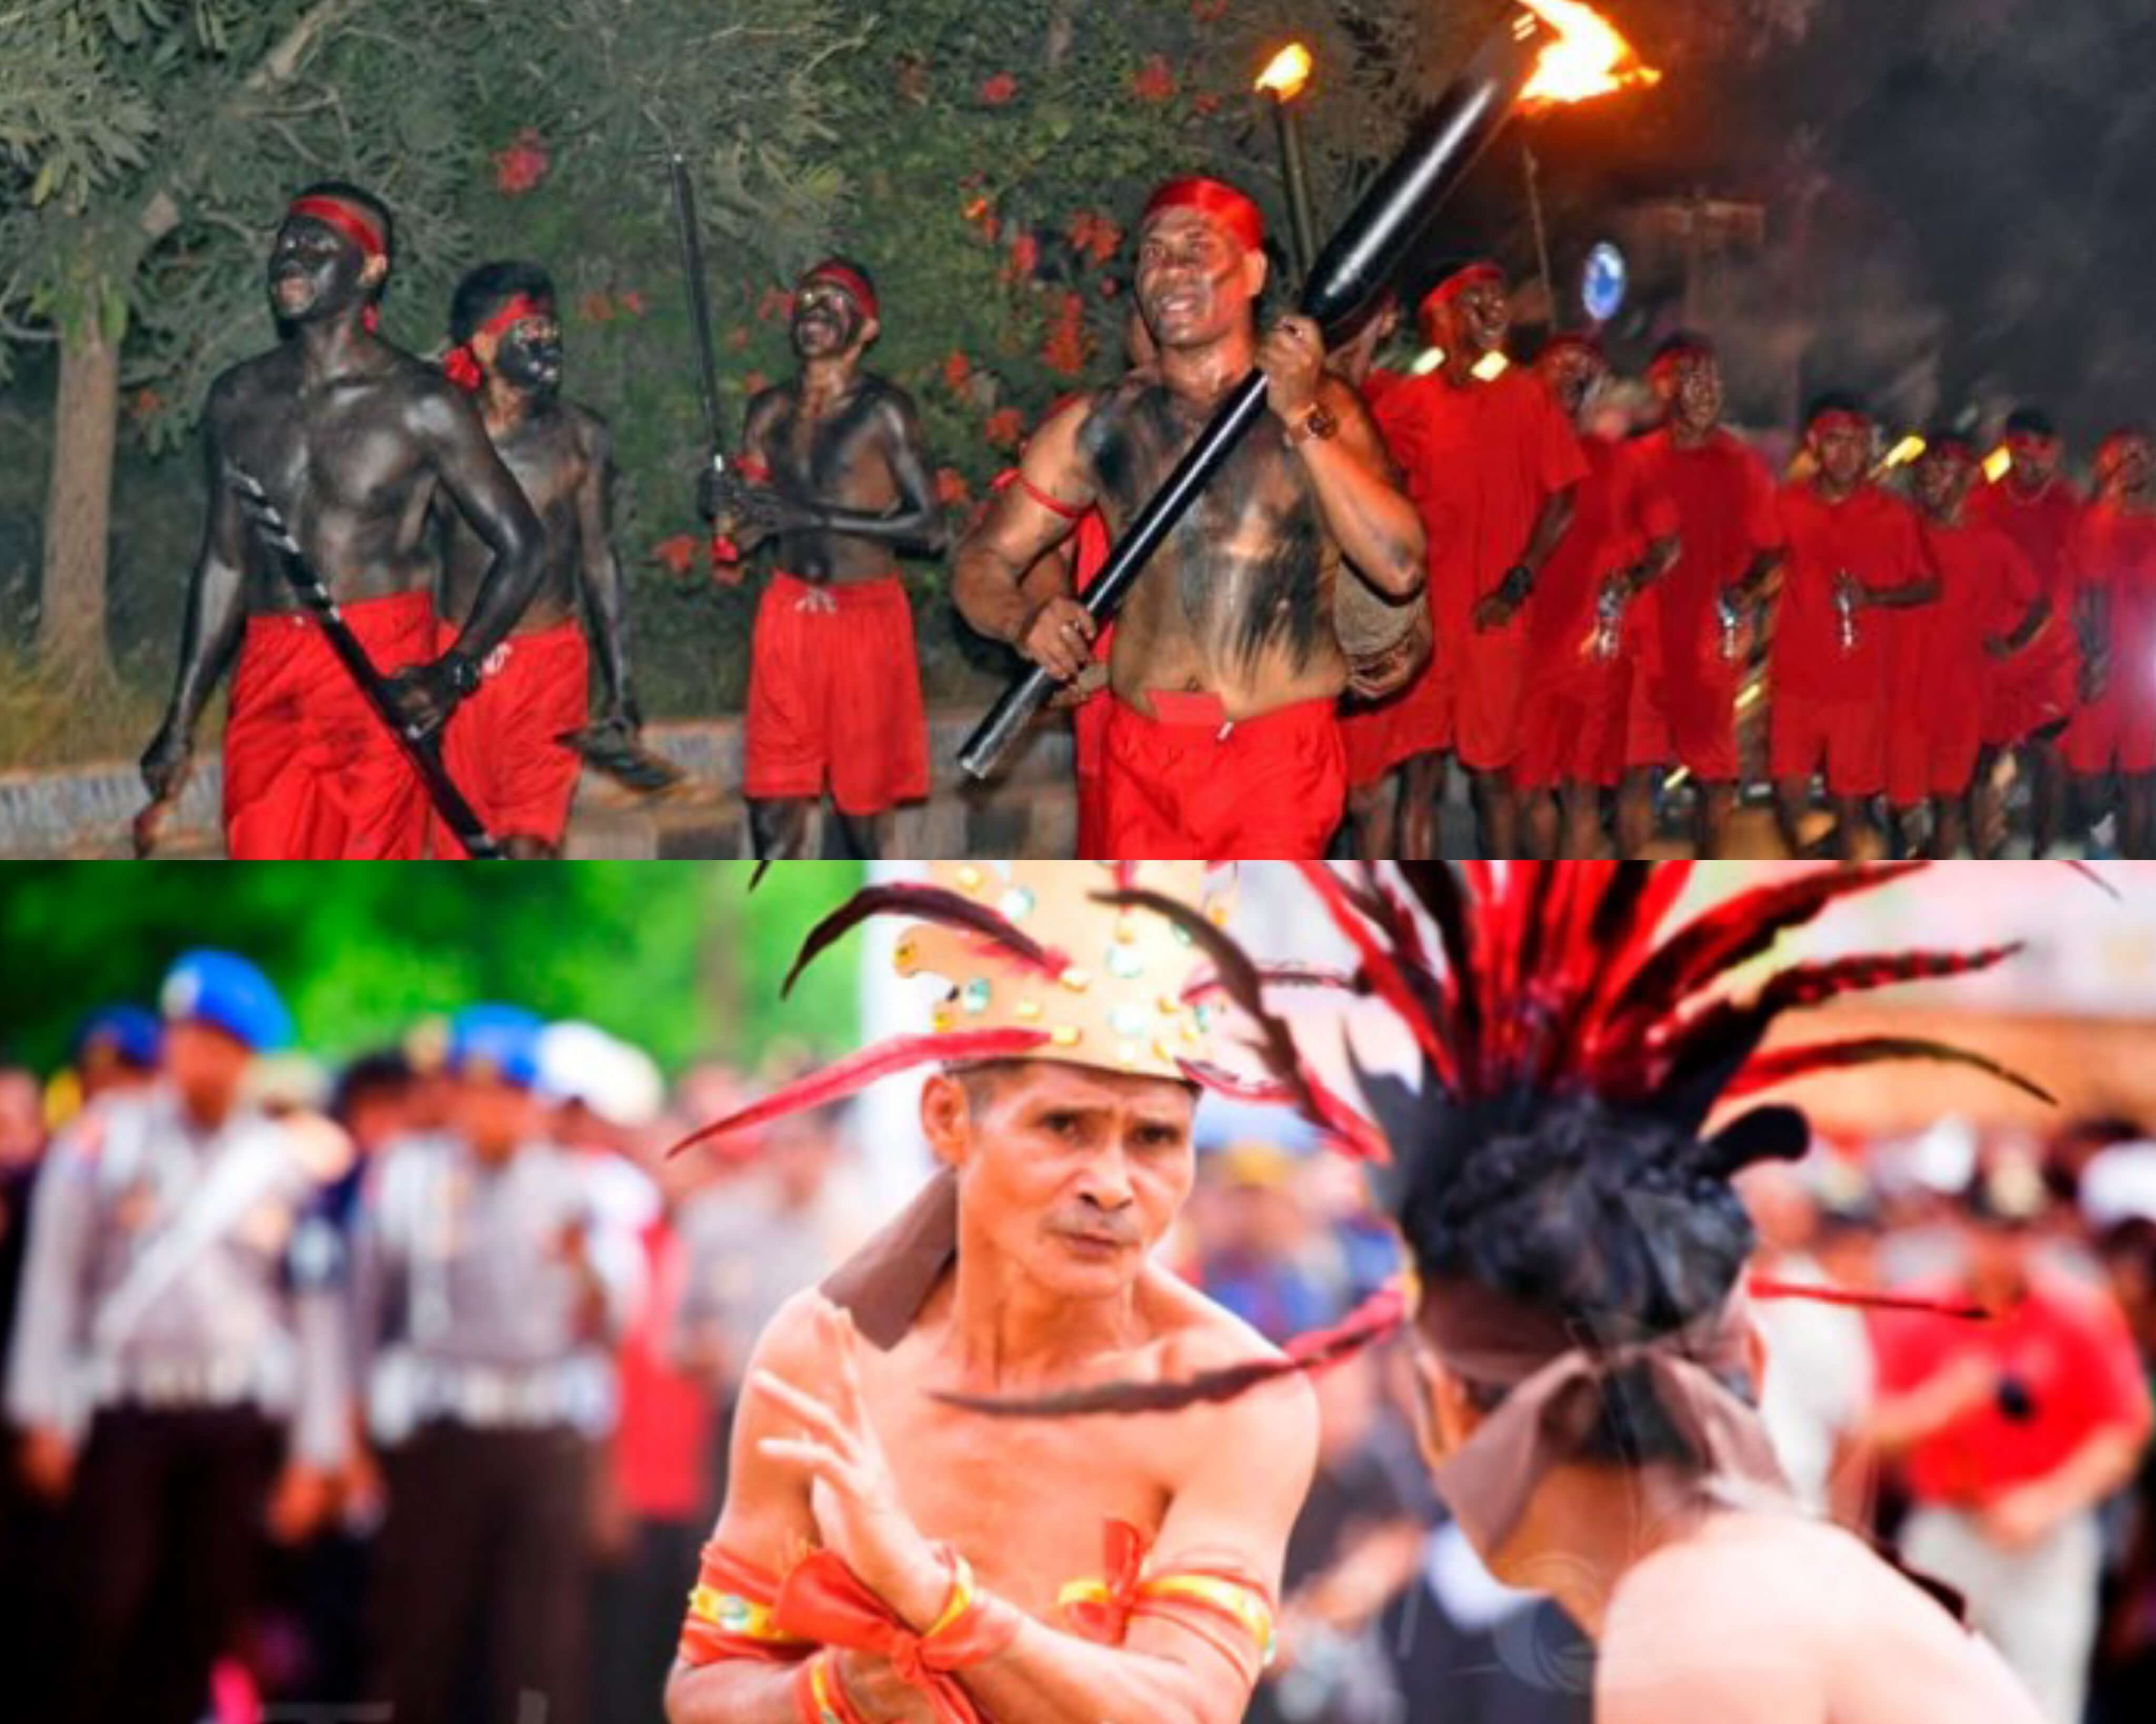 Melegenda Dan Berbudaya, Inilah 5 Upacara Tradisi Asli Suku Di Maluku! 